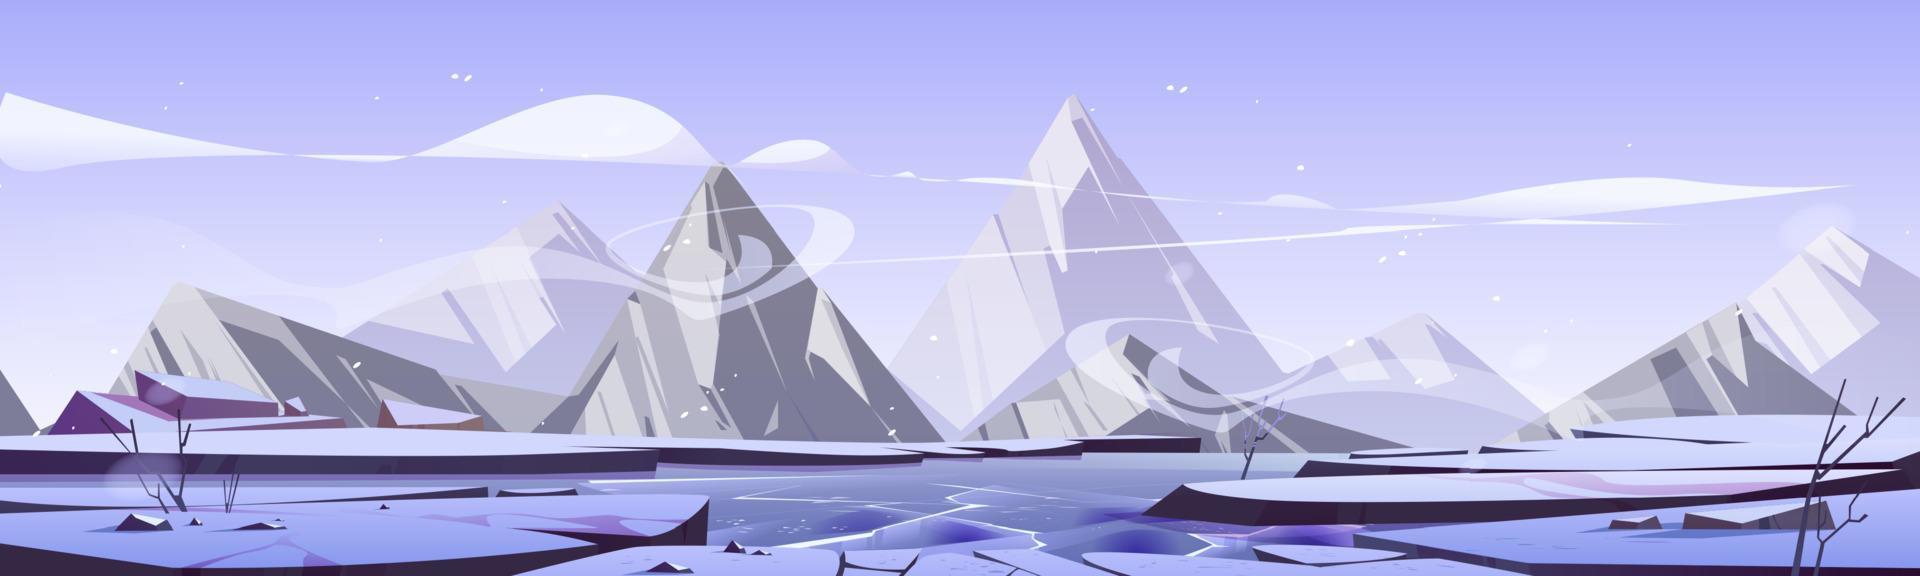 vinter- landskap med frysta sjö och bergen vektor